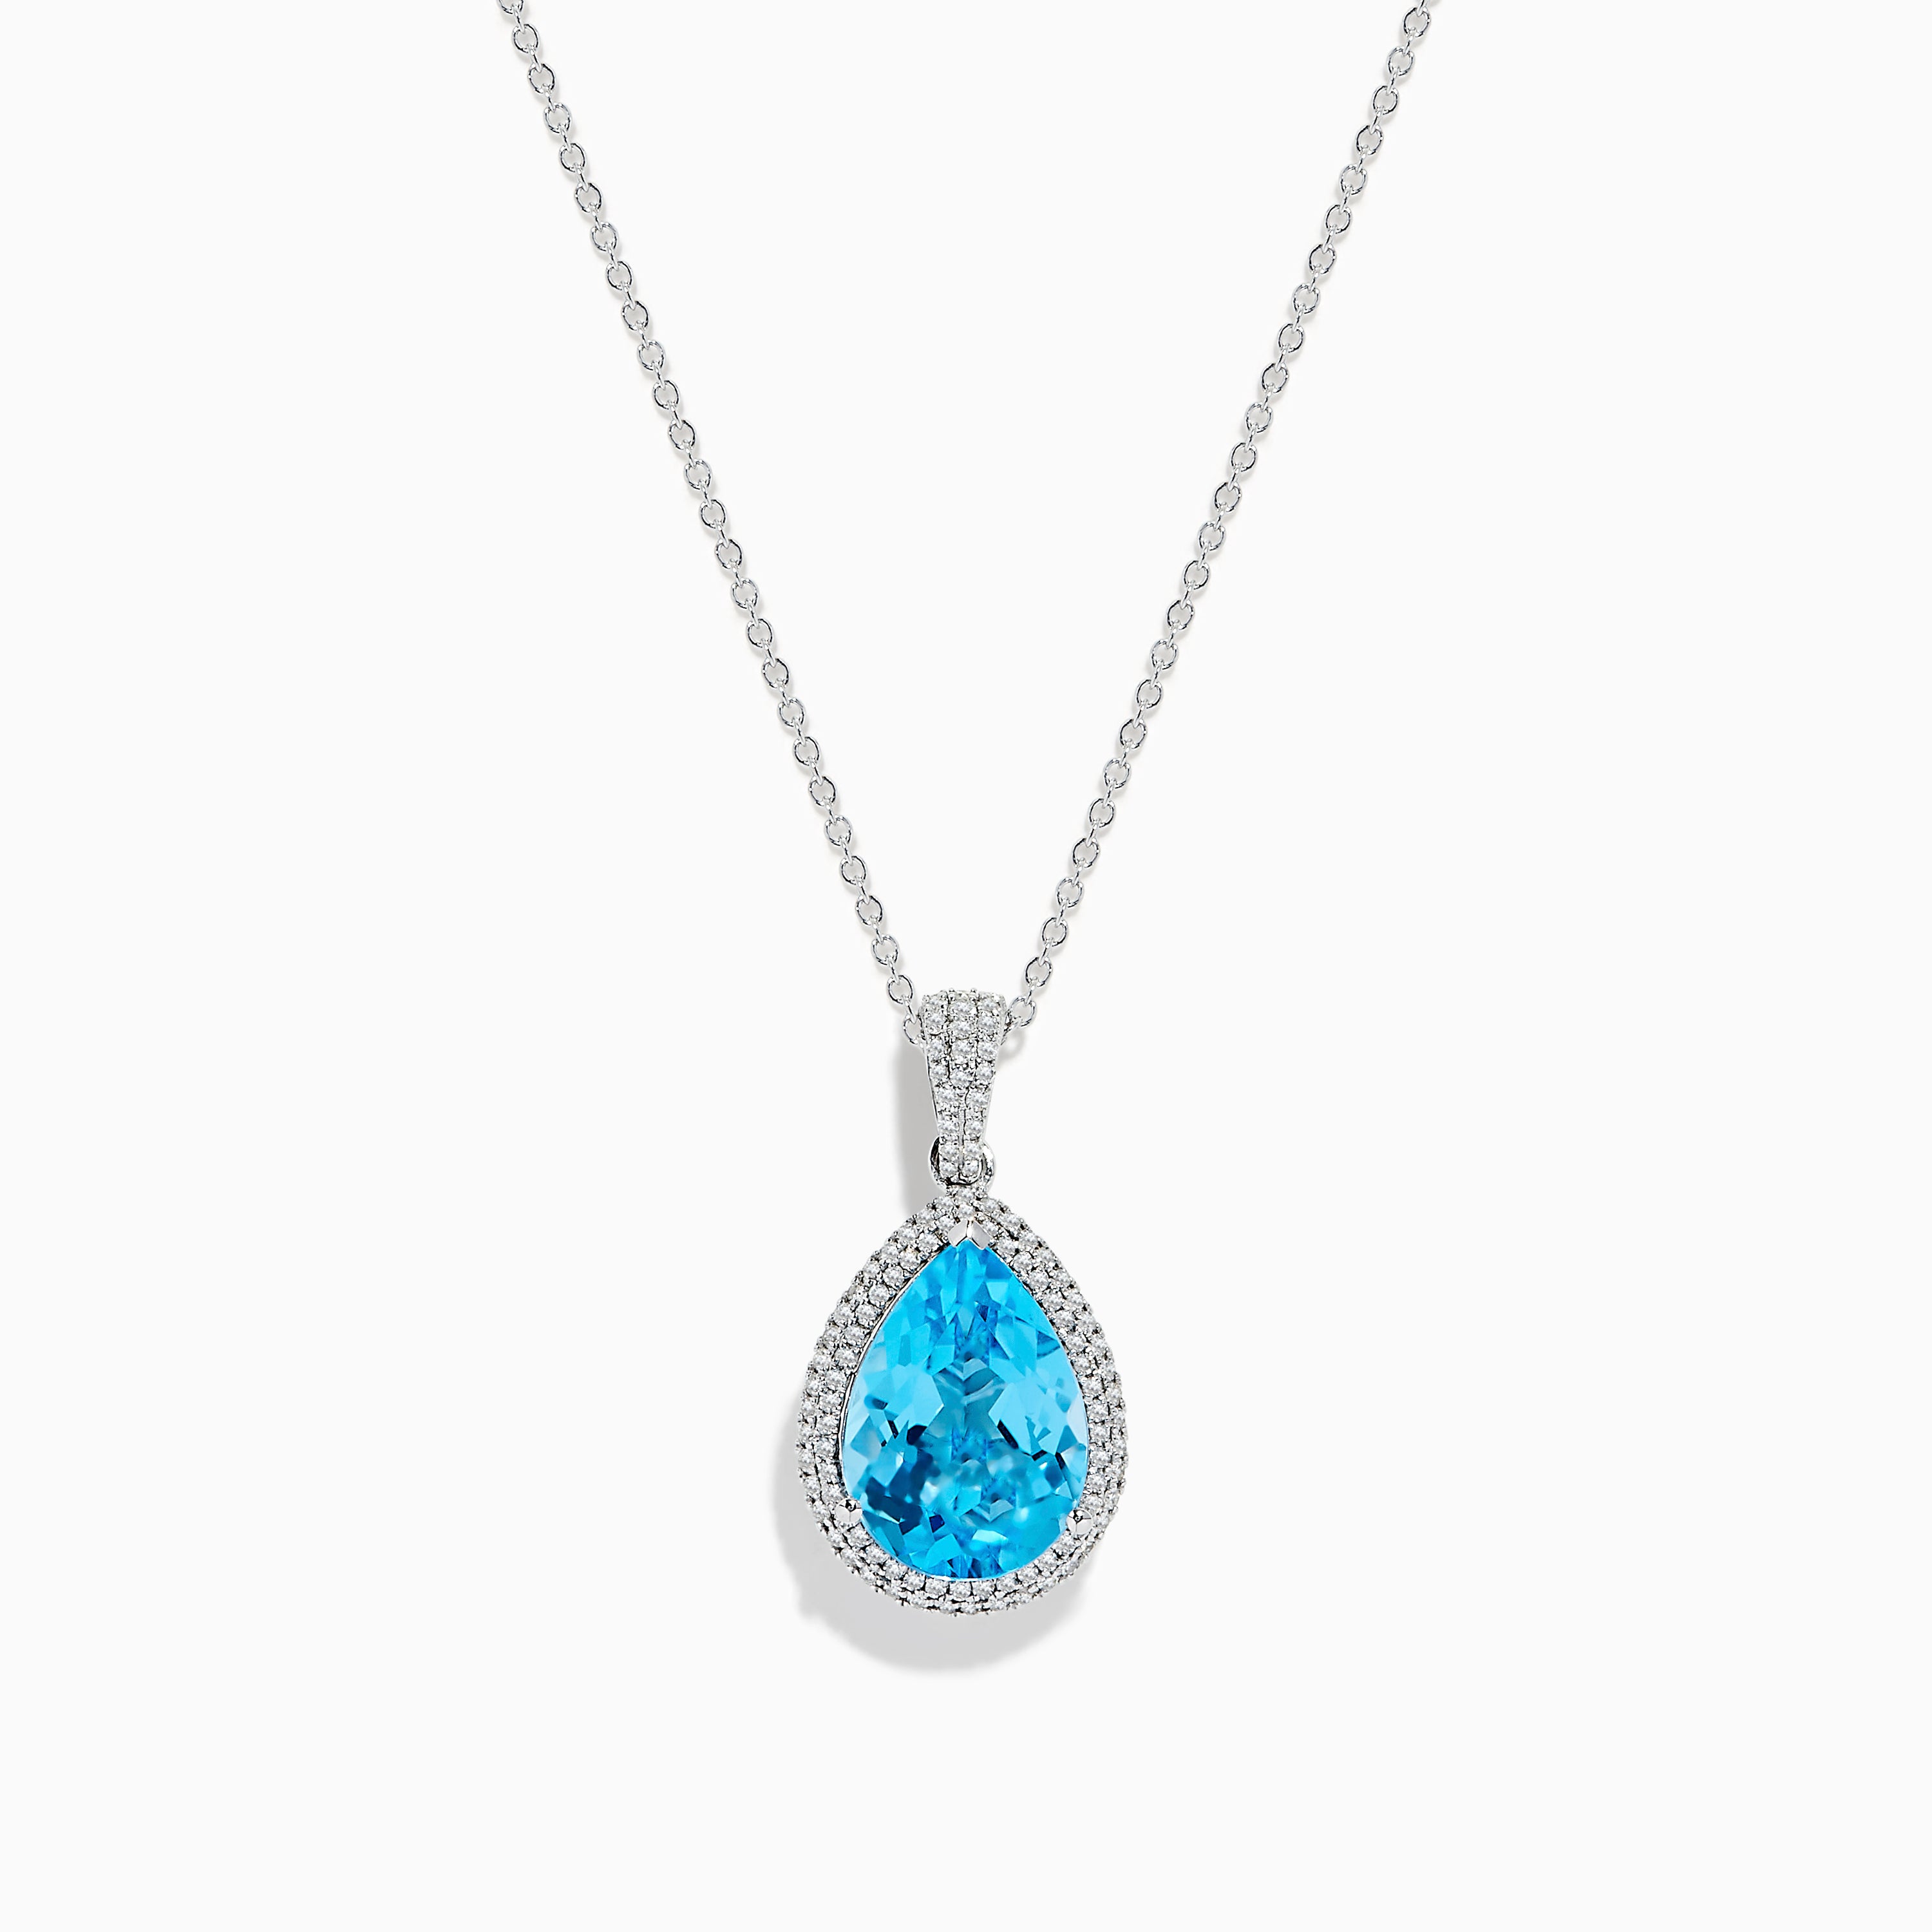 Effy Ocean Bleu 14K White Gold Blue Topaz and Diamond Pear Shaped Pendant